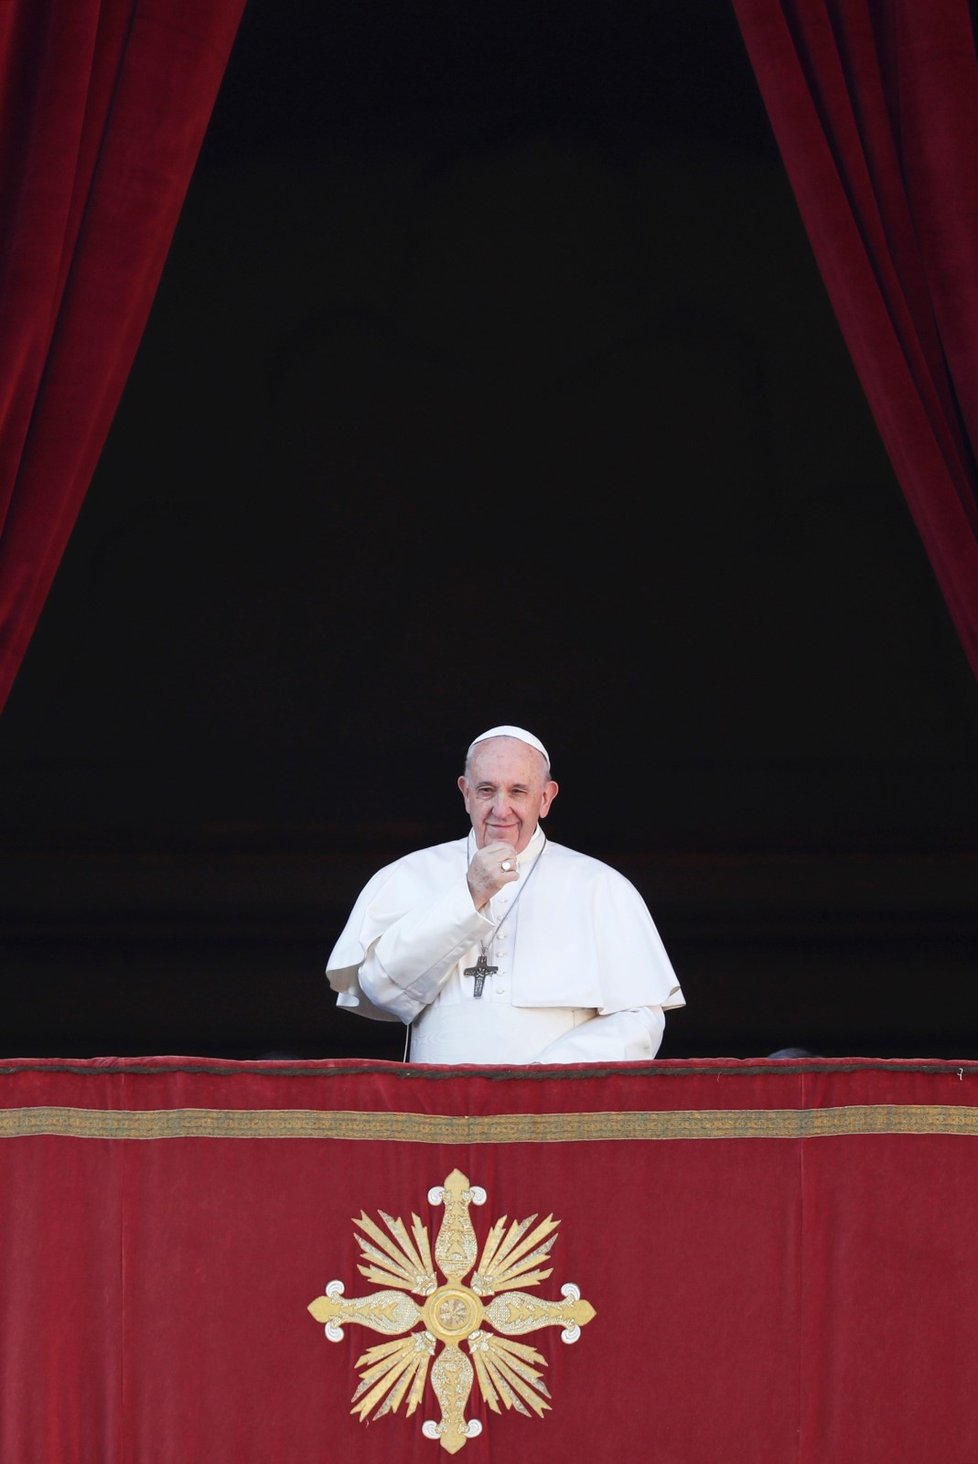 Papež František v tradičním vánočním poselství Městu a světu (Urbi et orbi) dnes vyzval k ukončení konfliktů zejména v zemích Blízkého východu (25. 12. 2019)